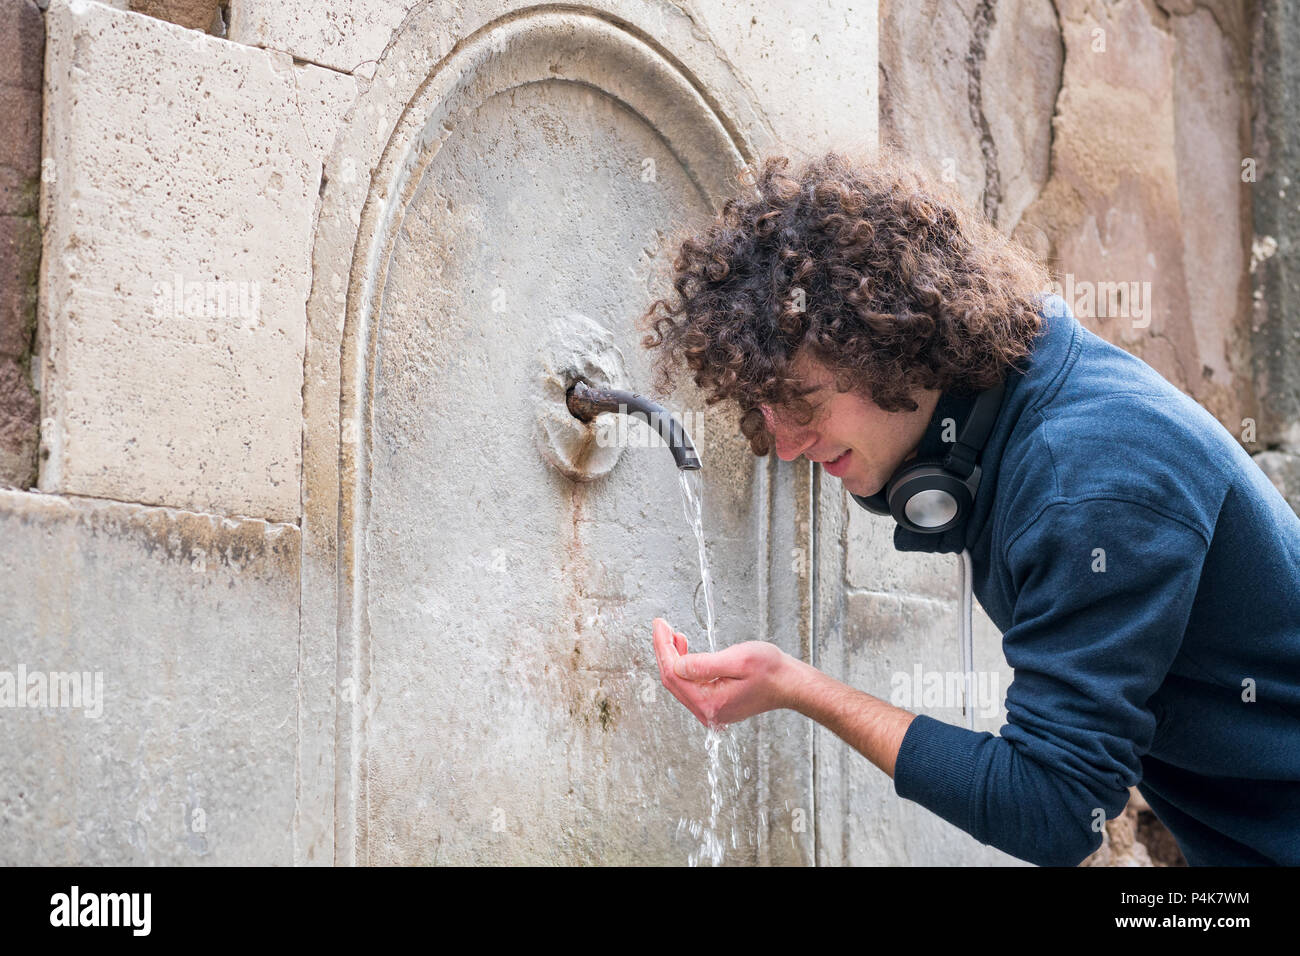 Jeune homme aux cheveux bouclés à une fontaine d'eau potable Banque D'Images